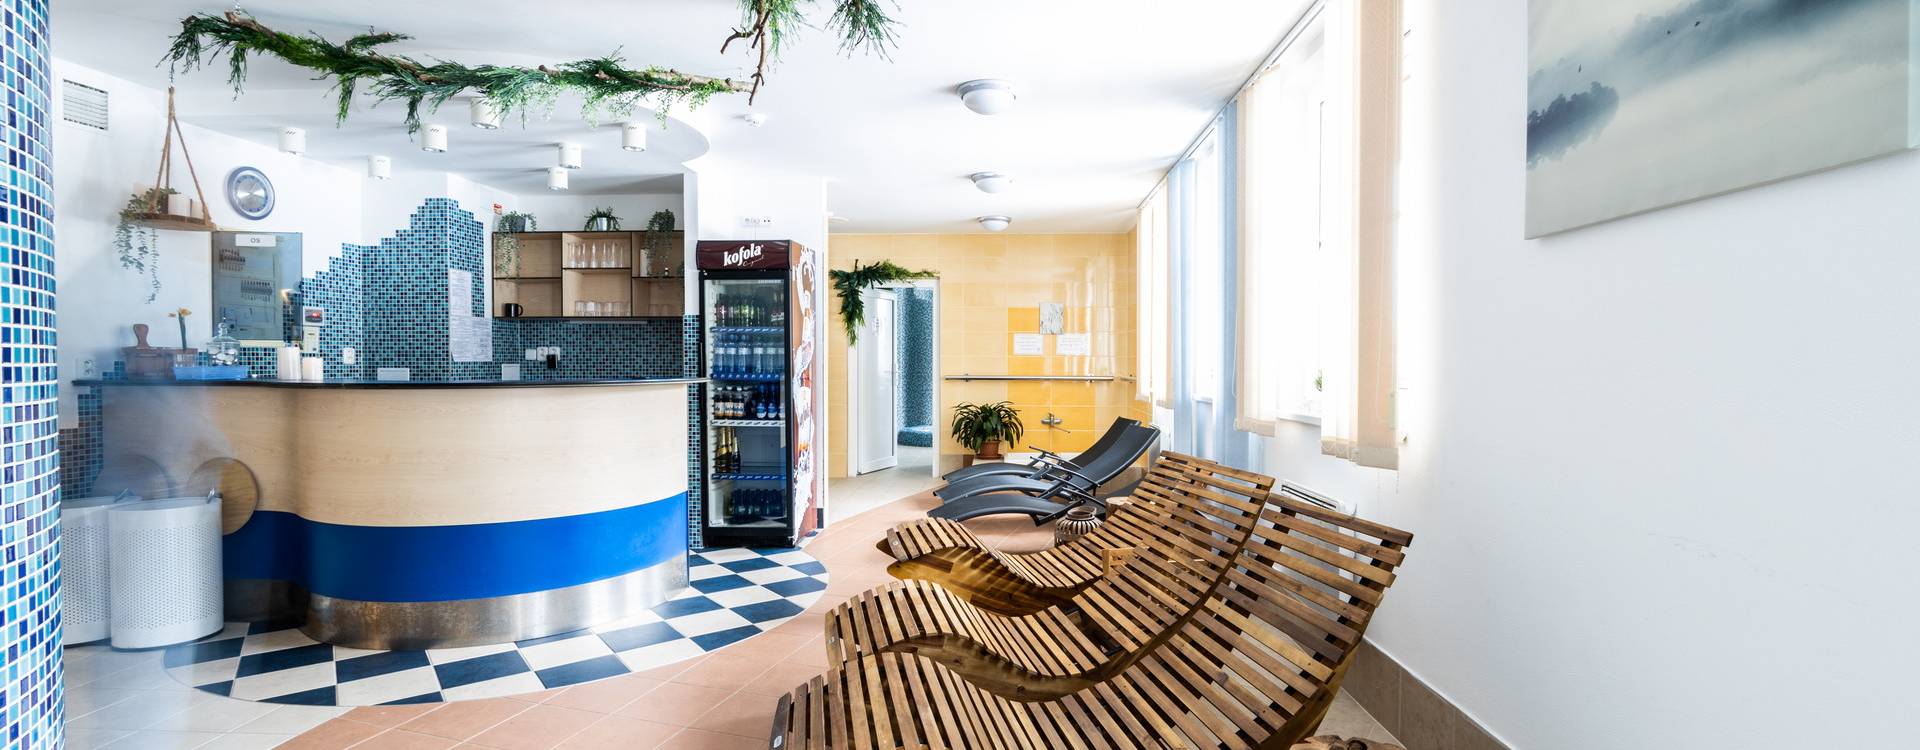 Hotel Petrovy Kameny - Bleskový relax - wellness pobyt se snídaní